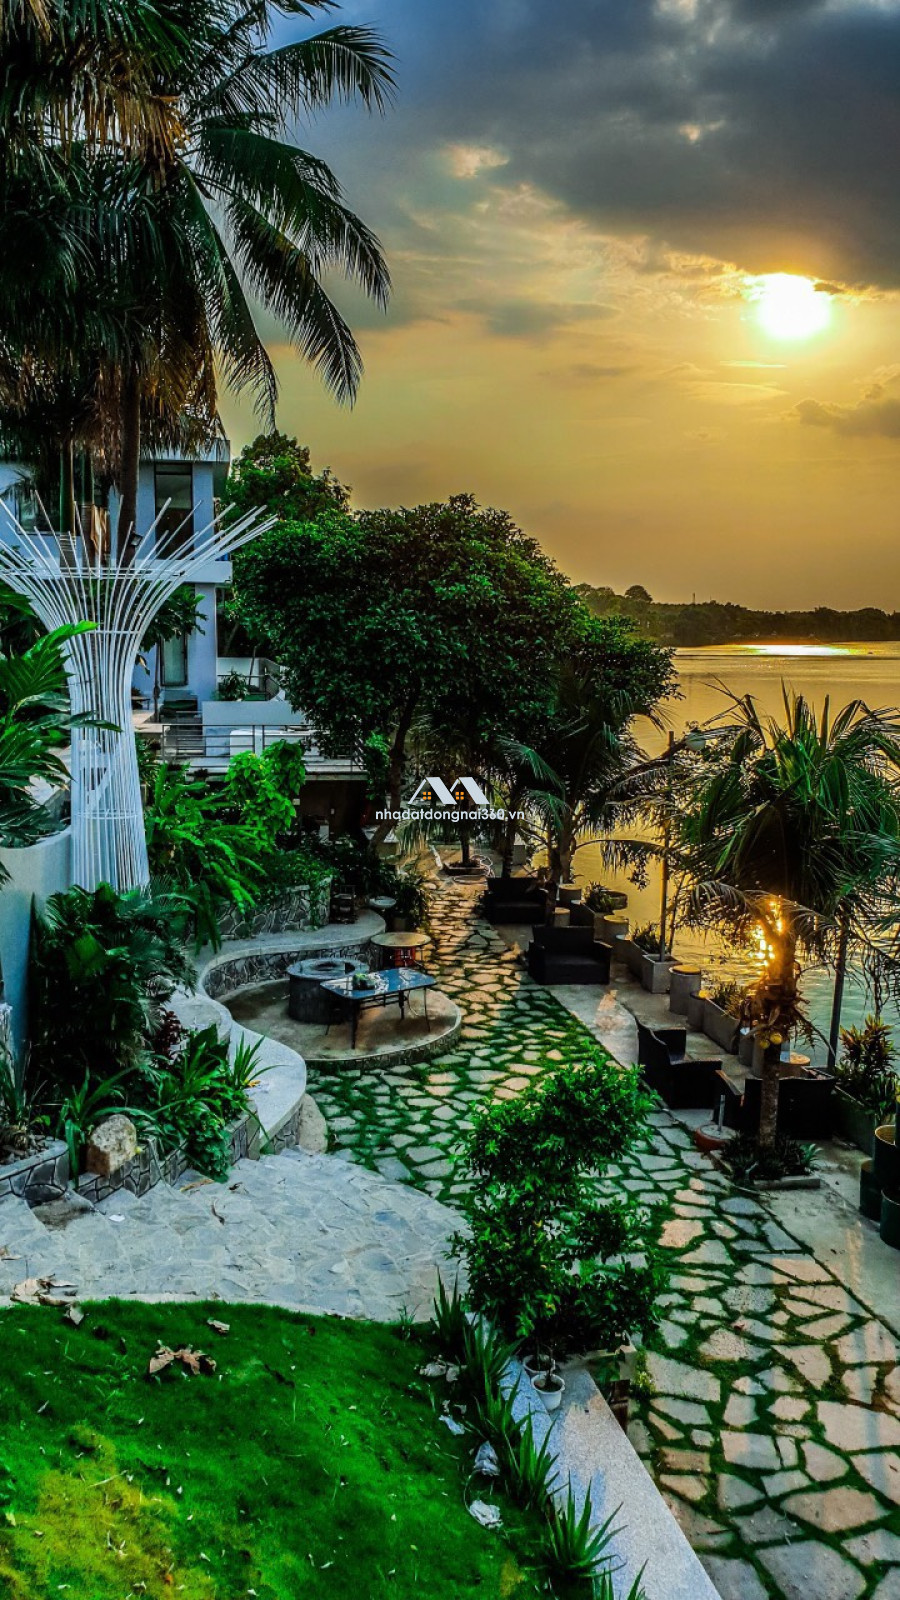 Bán Resort ven sông Đồng Nai chỉ 1 triệu đô với diện tích 2000m2